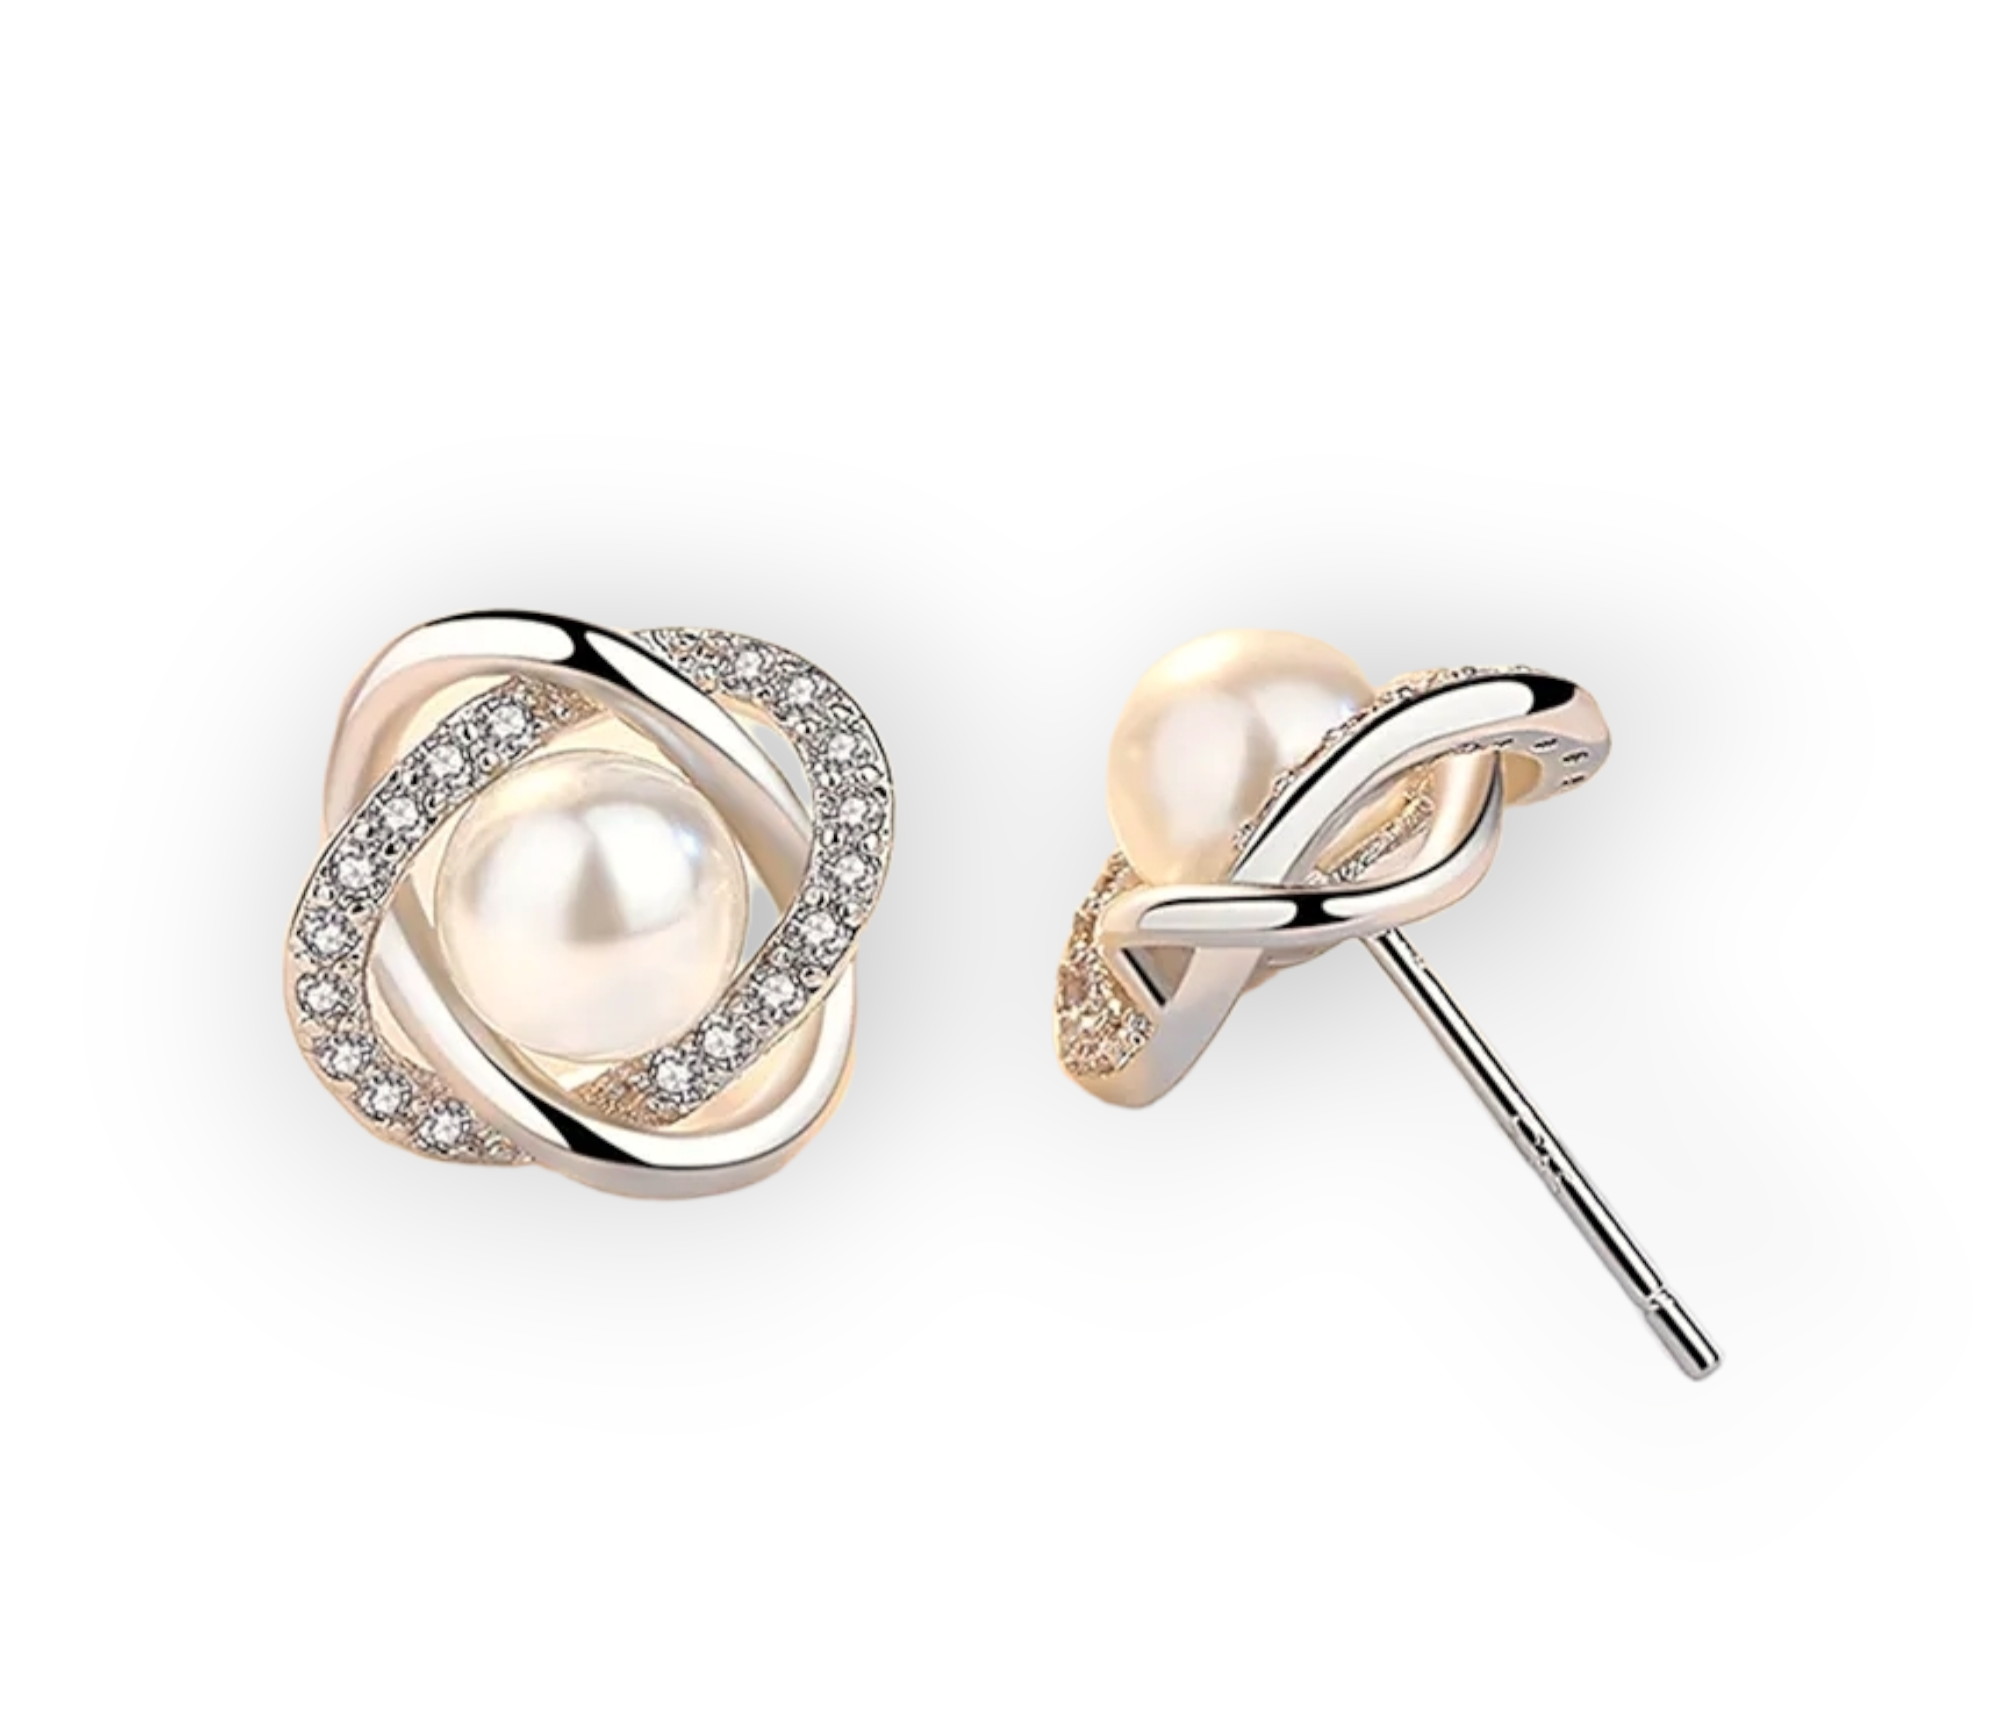 Pearls & Silver Swirl Earrings